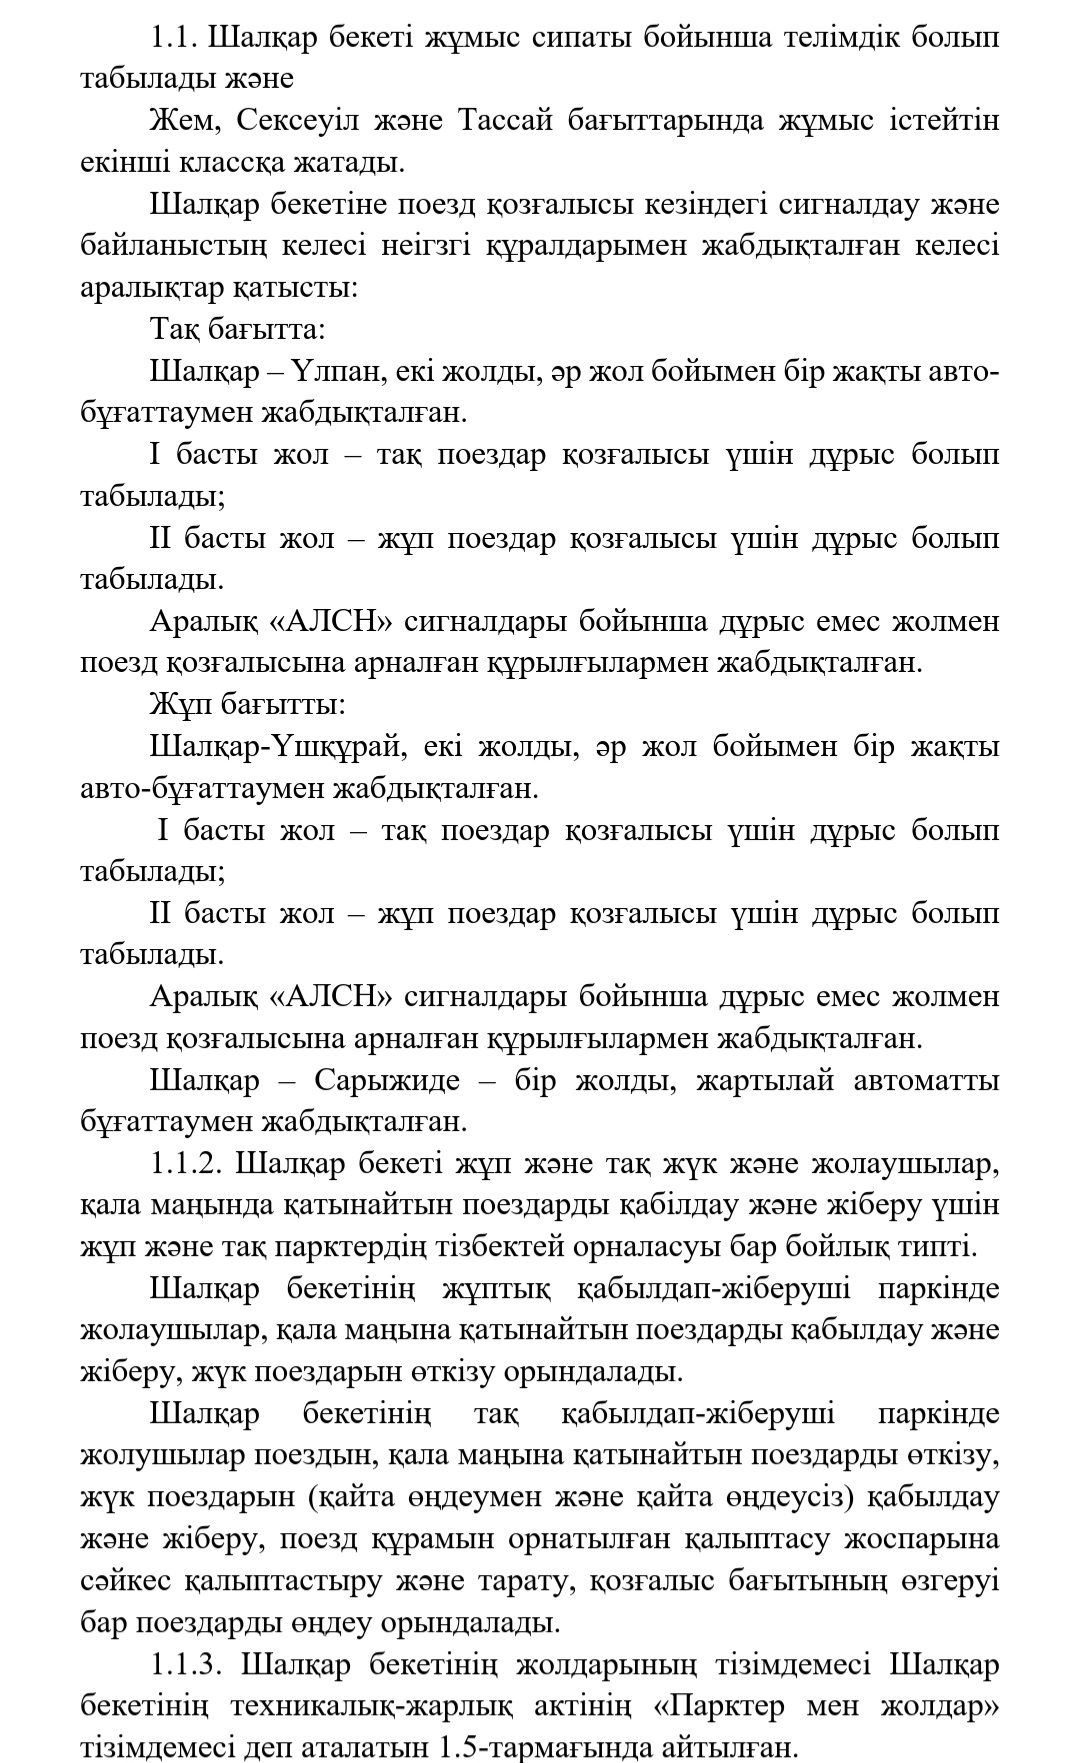 Фото Перевод технических текстов с русского на казахский языки быстро, качественно и недорого  3